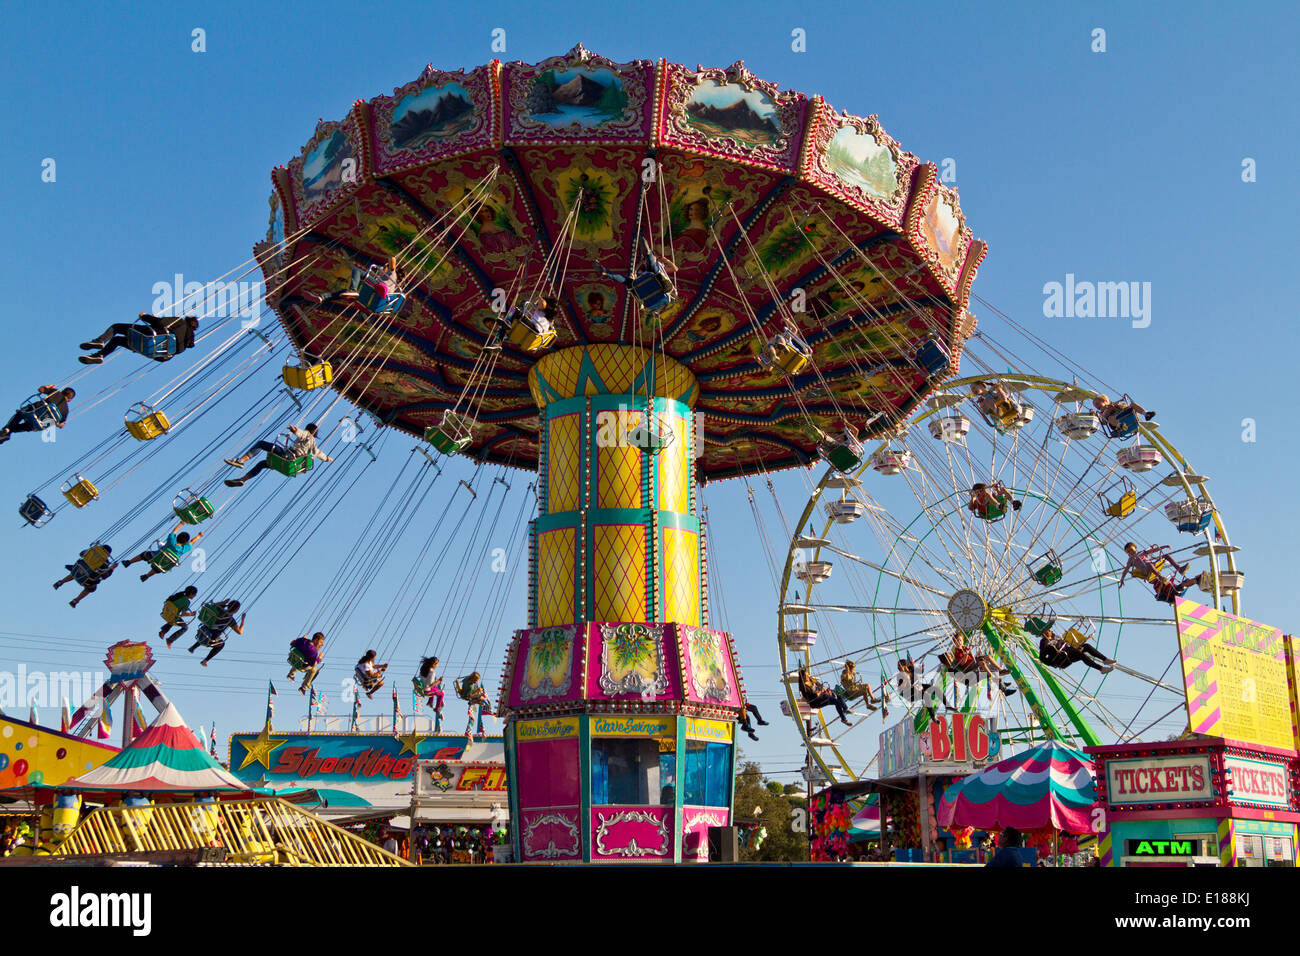 Personen, die Spinnen in der Luft hängend in Stühle auf einem Karneval fahren. Stockfoto